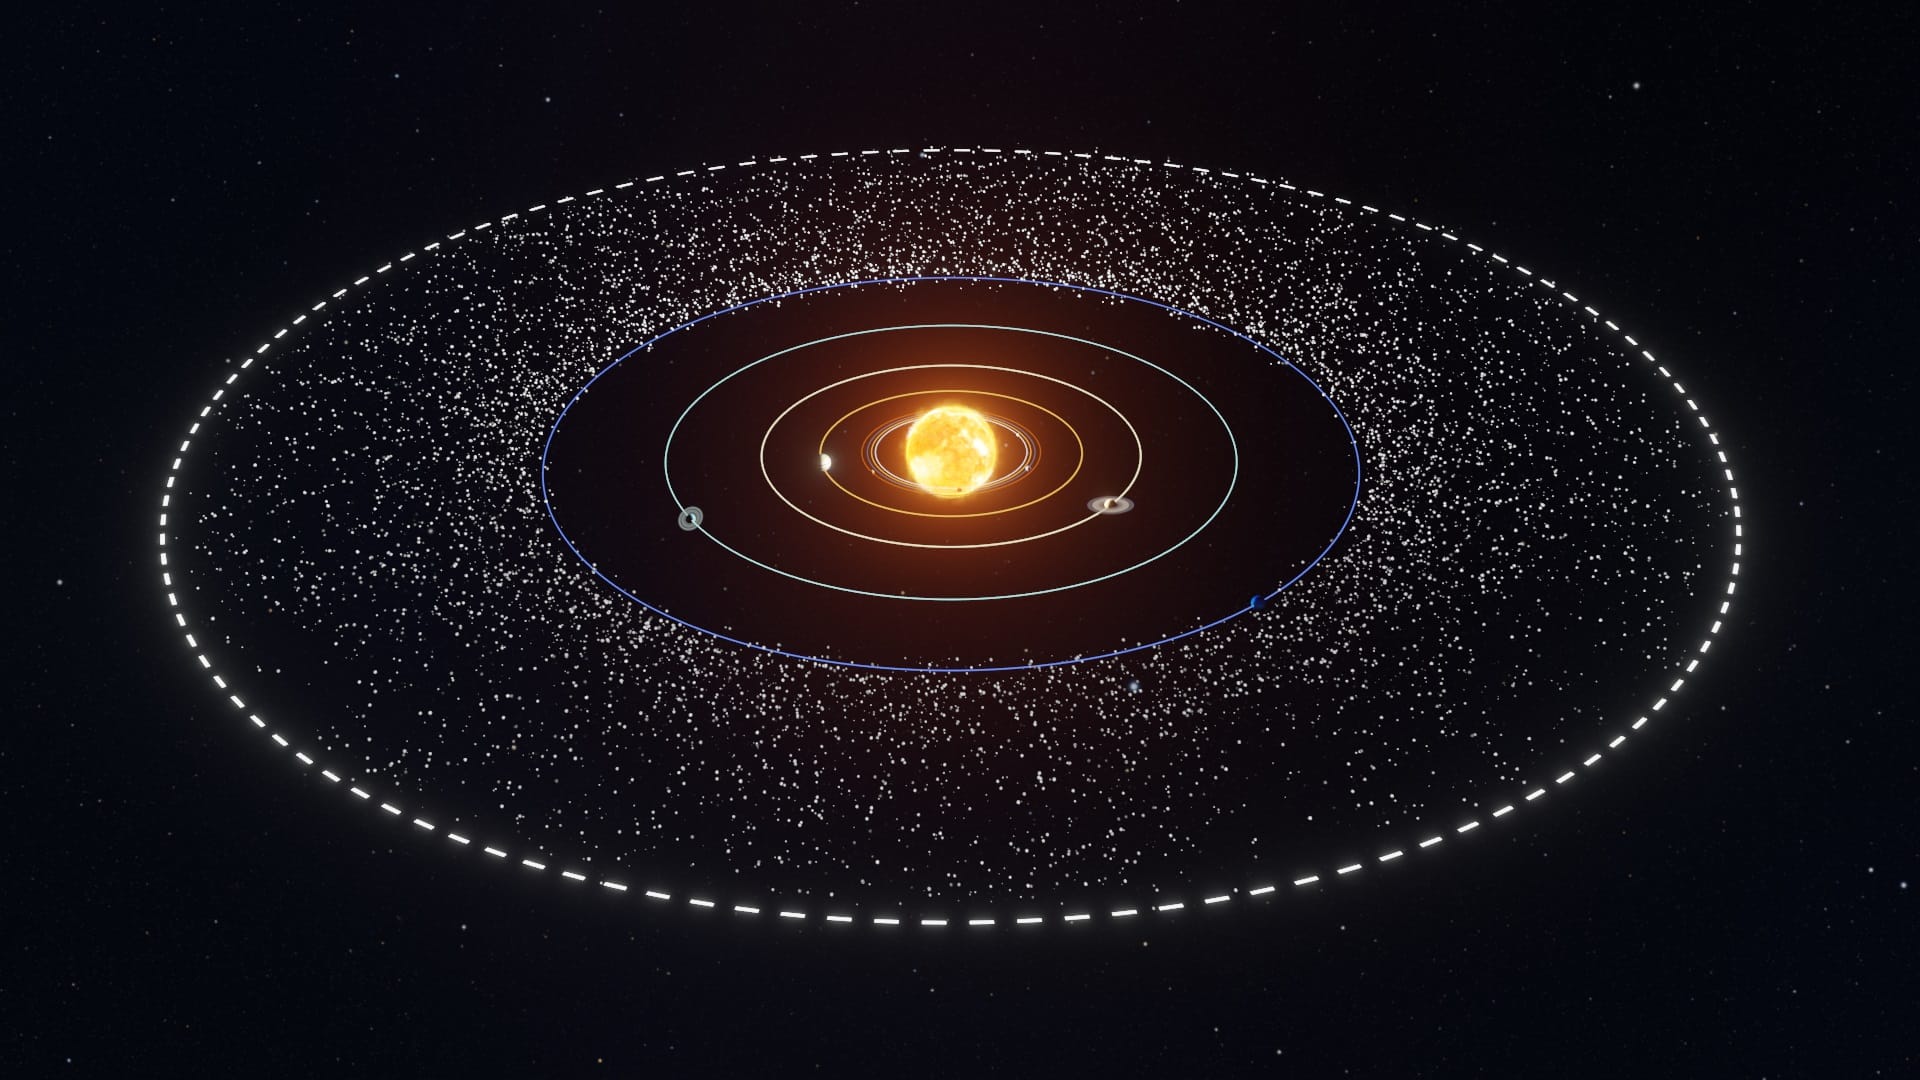 Kuipergordel: De grens van het zonnestelsel